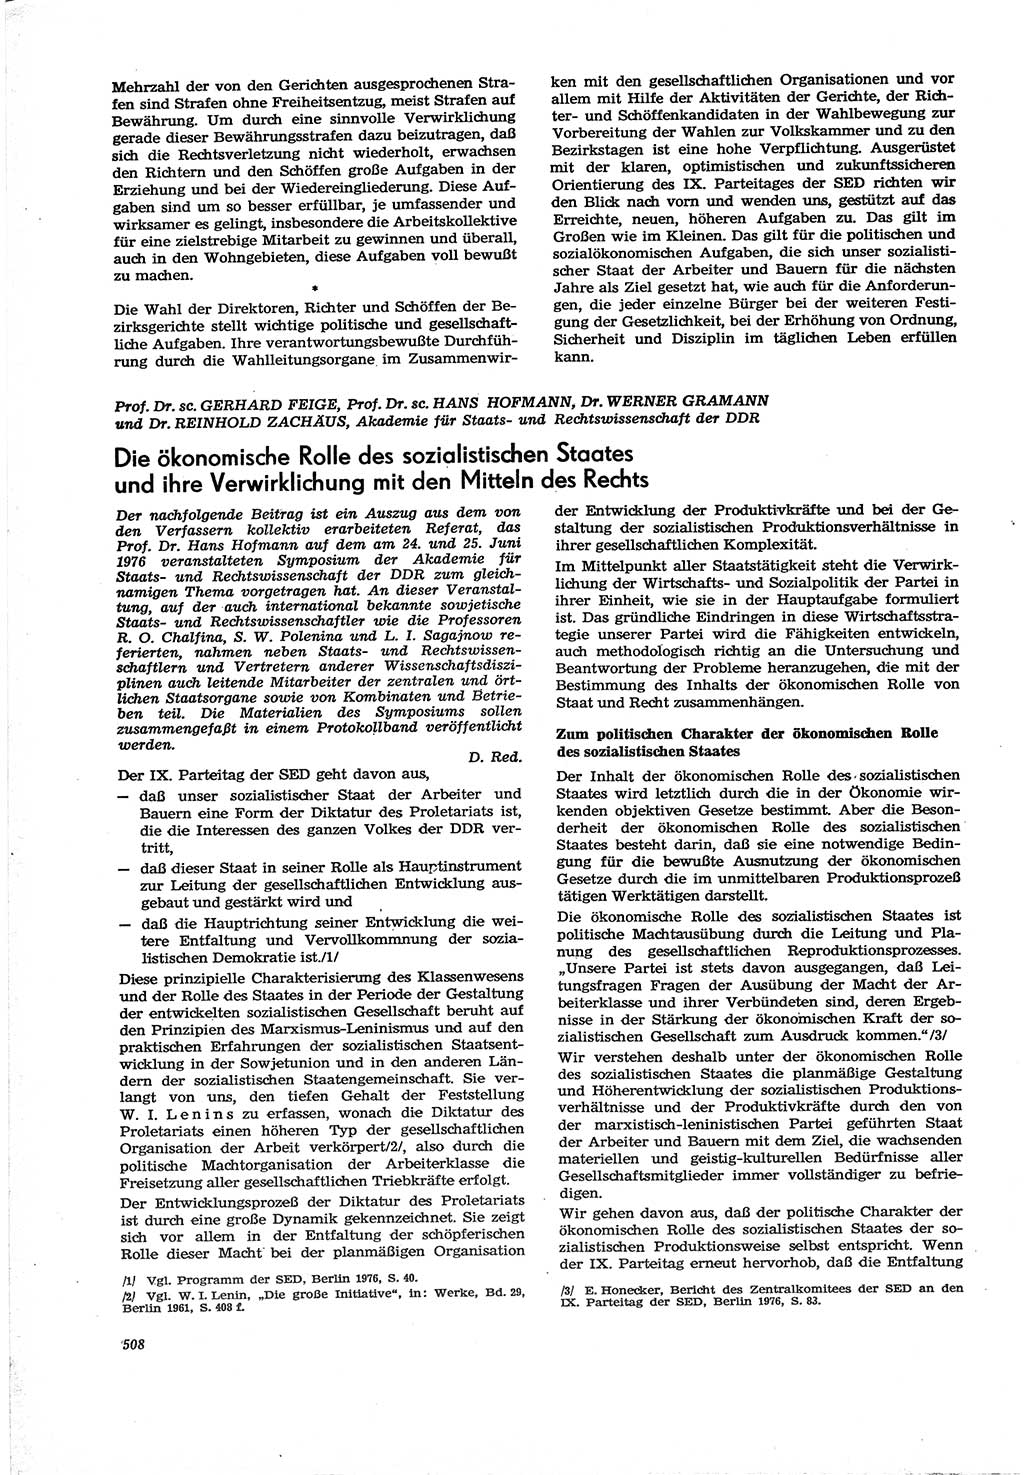 Neue Justiz (NJ), Zeitschrift für Recht und Rechtswissenschaft [Deutsche Demokratische Republik (DDR)], 30. Jahrgang 1976, Seite 508 (NJ DDR 1976, S. 508)